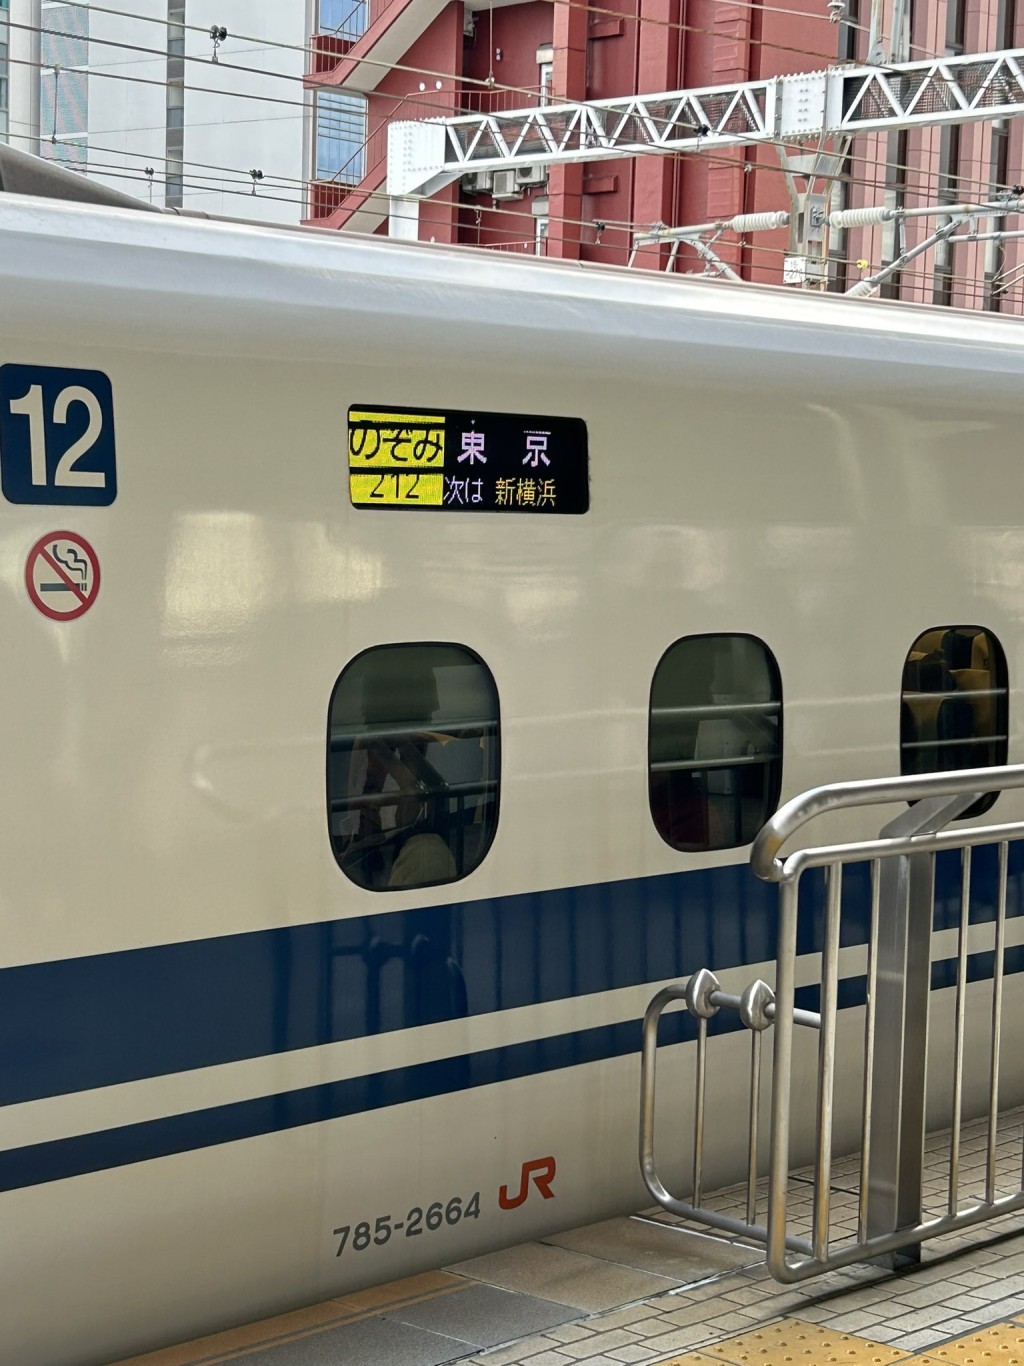 日本JR靜岡站有僧人跳落路軌找手機，導致新幹線部份列車受阻。示意圖